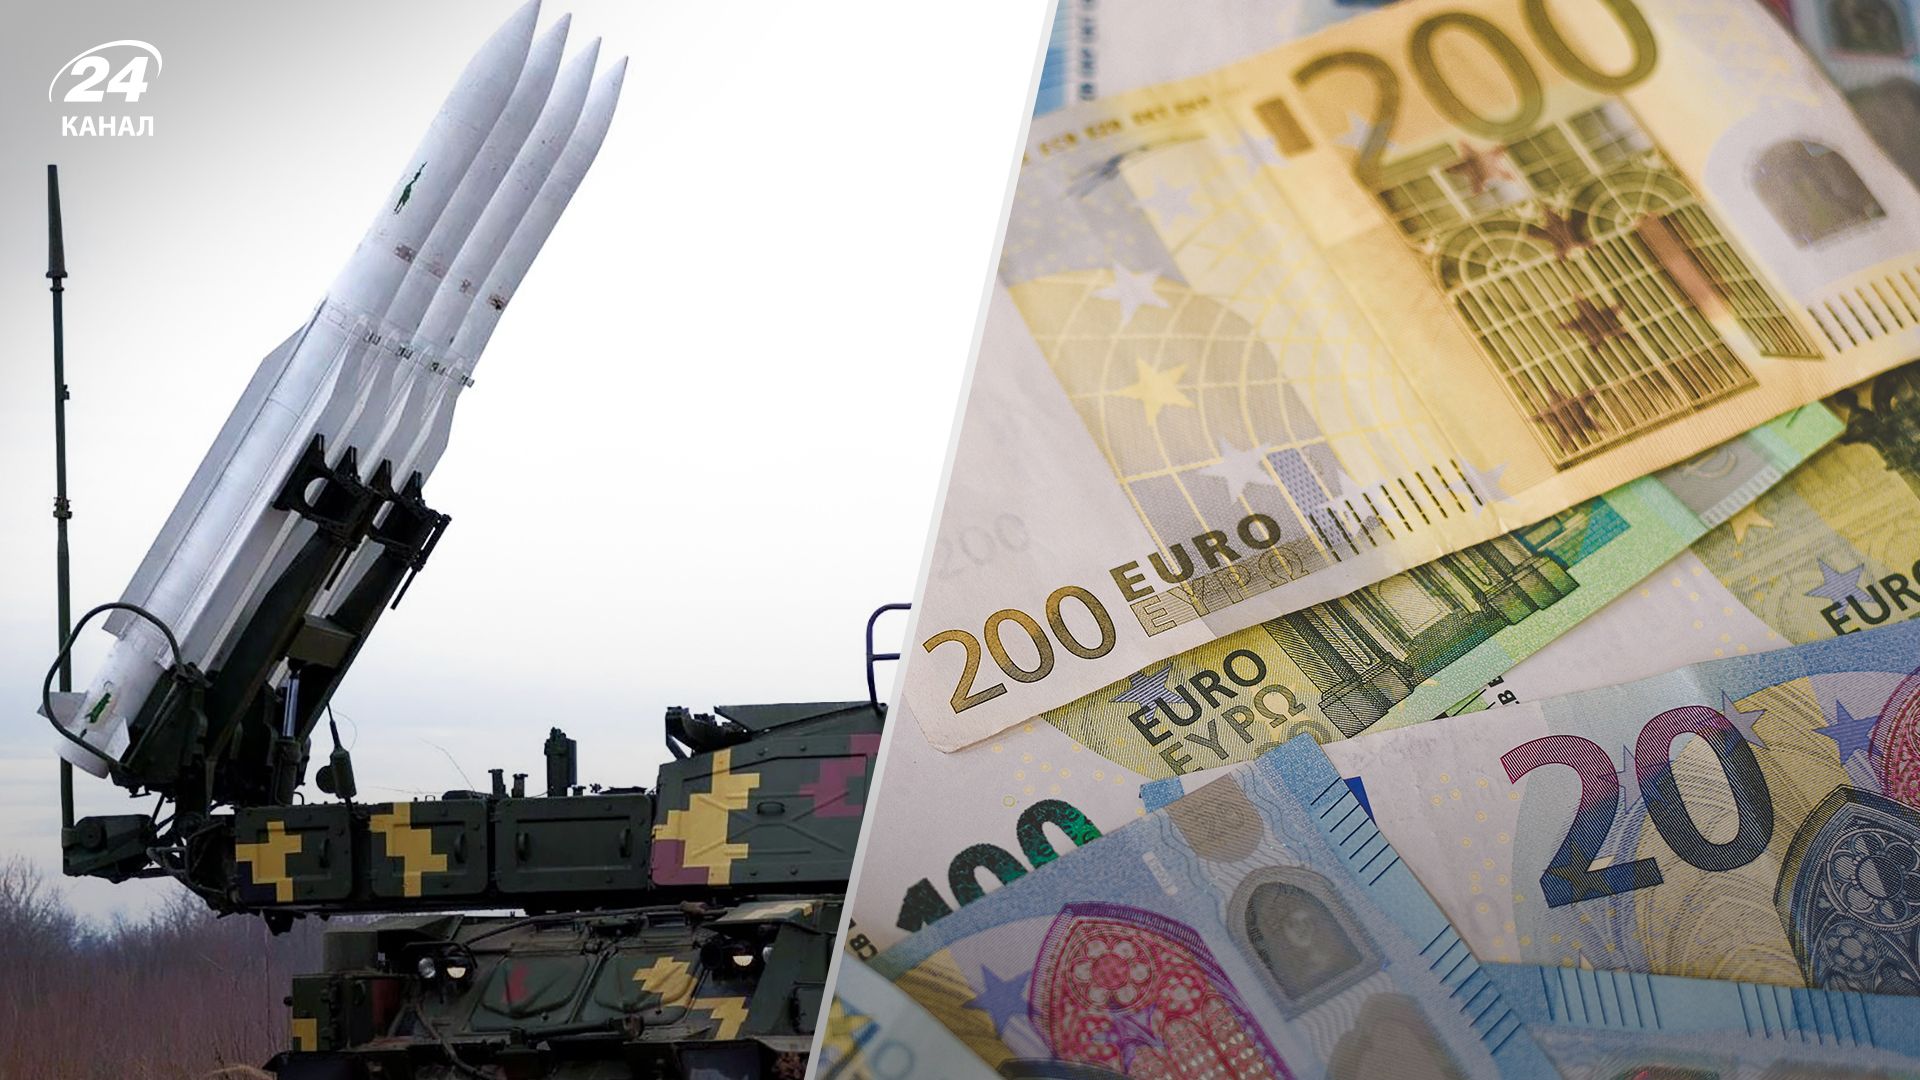 Литва собрала миллион евро для ПВО Украины - ИТ-компания удвоит сумму